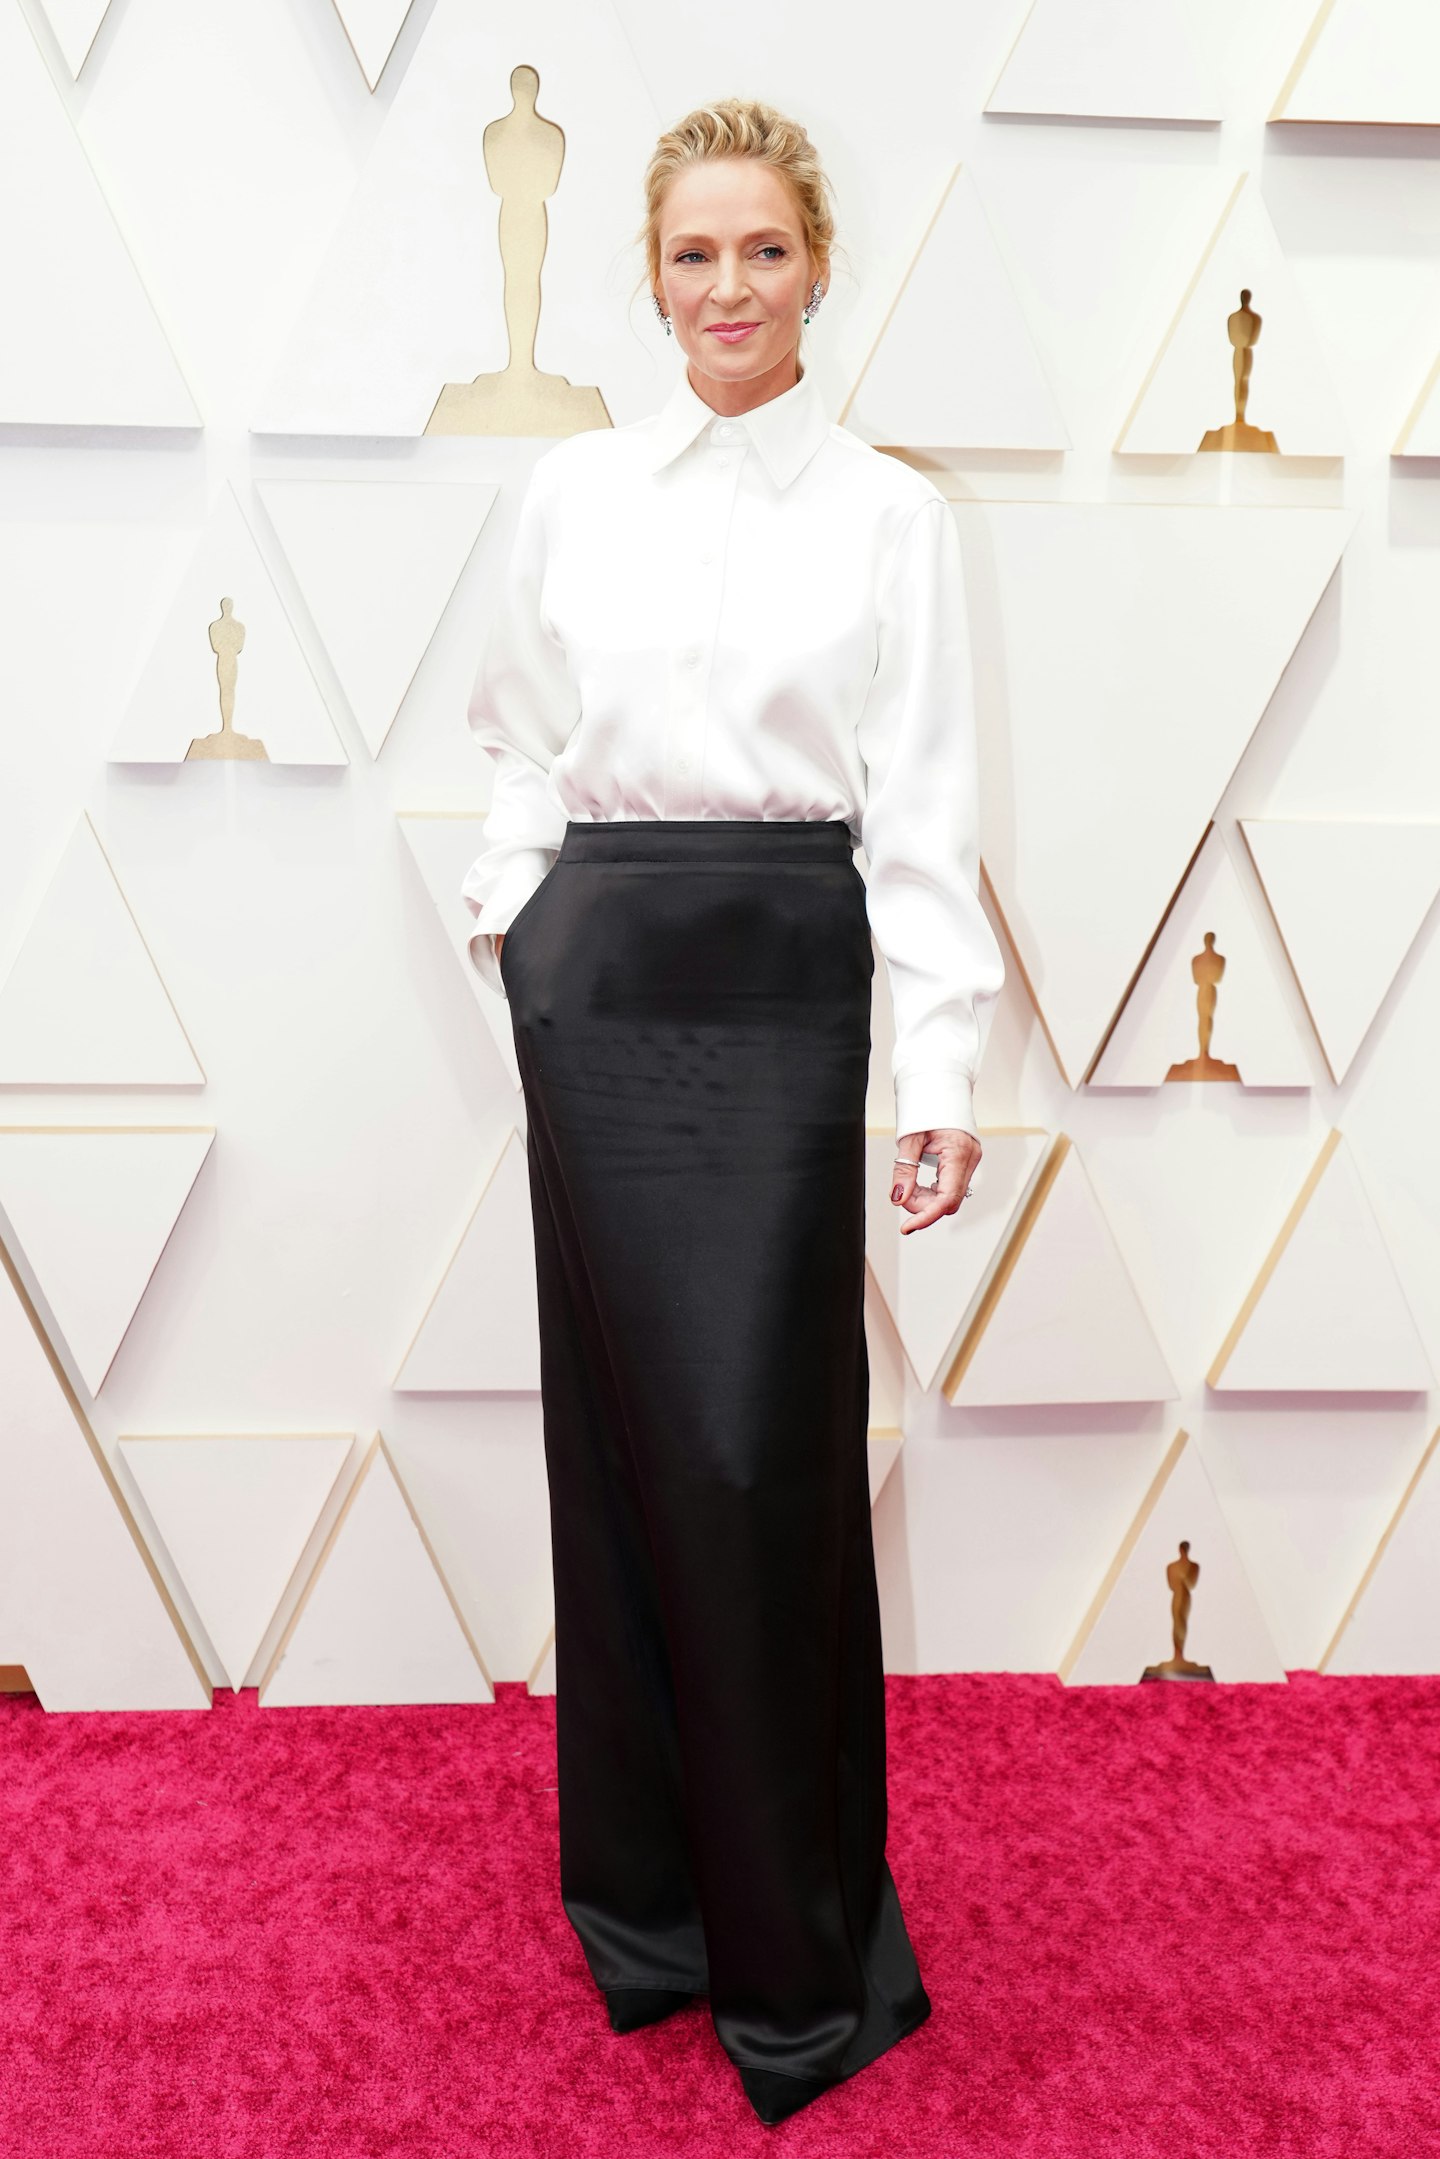 Timothée Chalamet sorprendió en los Oscars 2022 con traje de Luis Vuitton